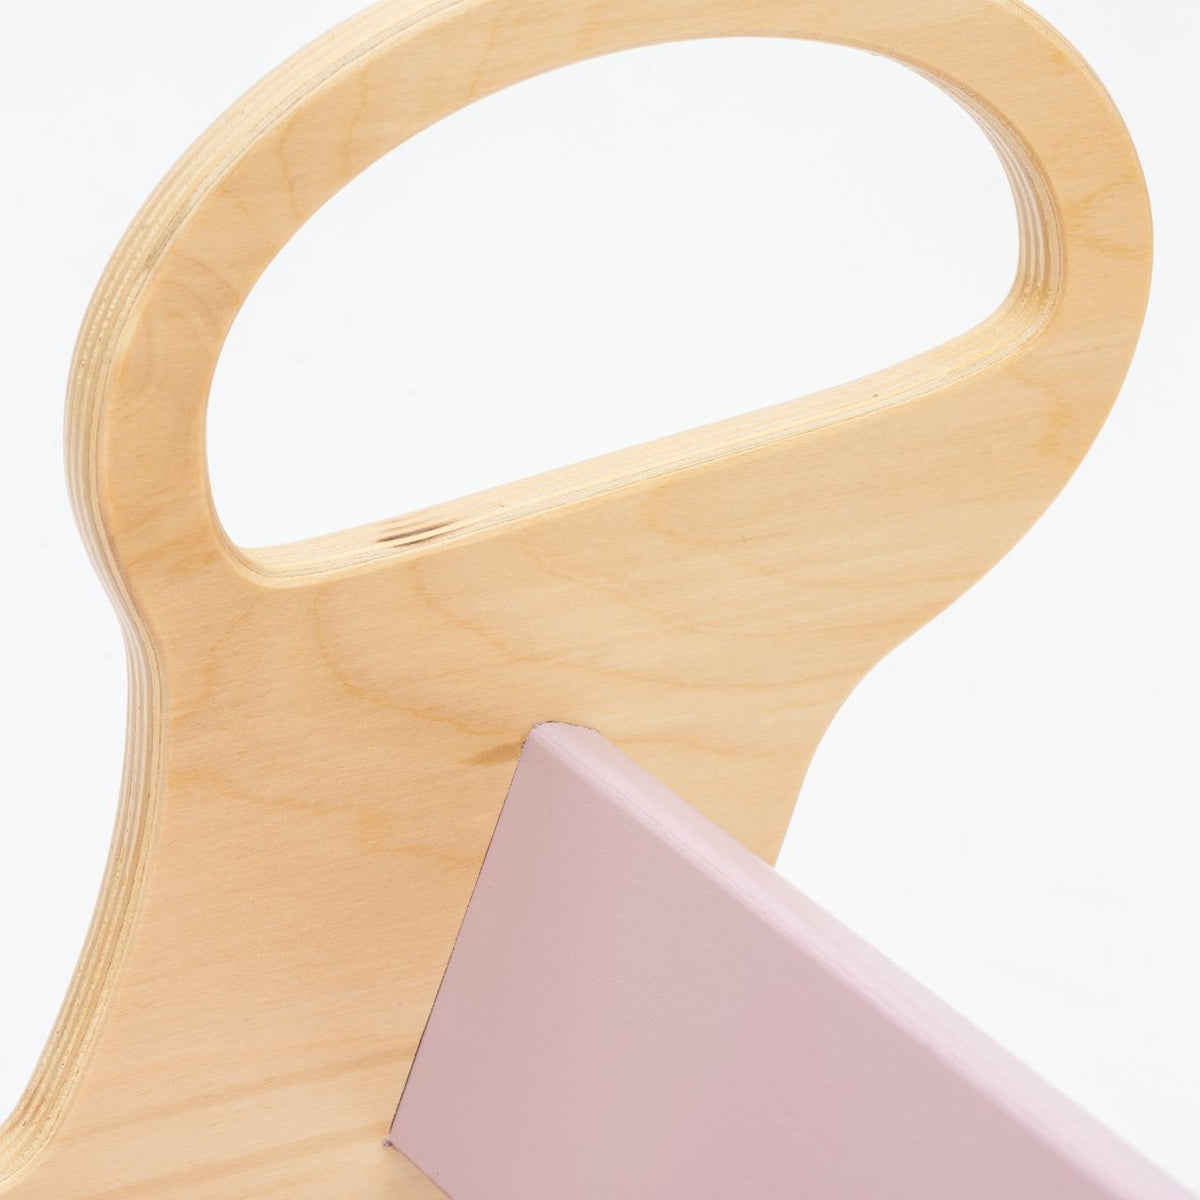 Conjunto - baloiço / quadro de dupla face / mini cadeira - cores pastel